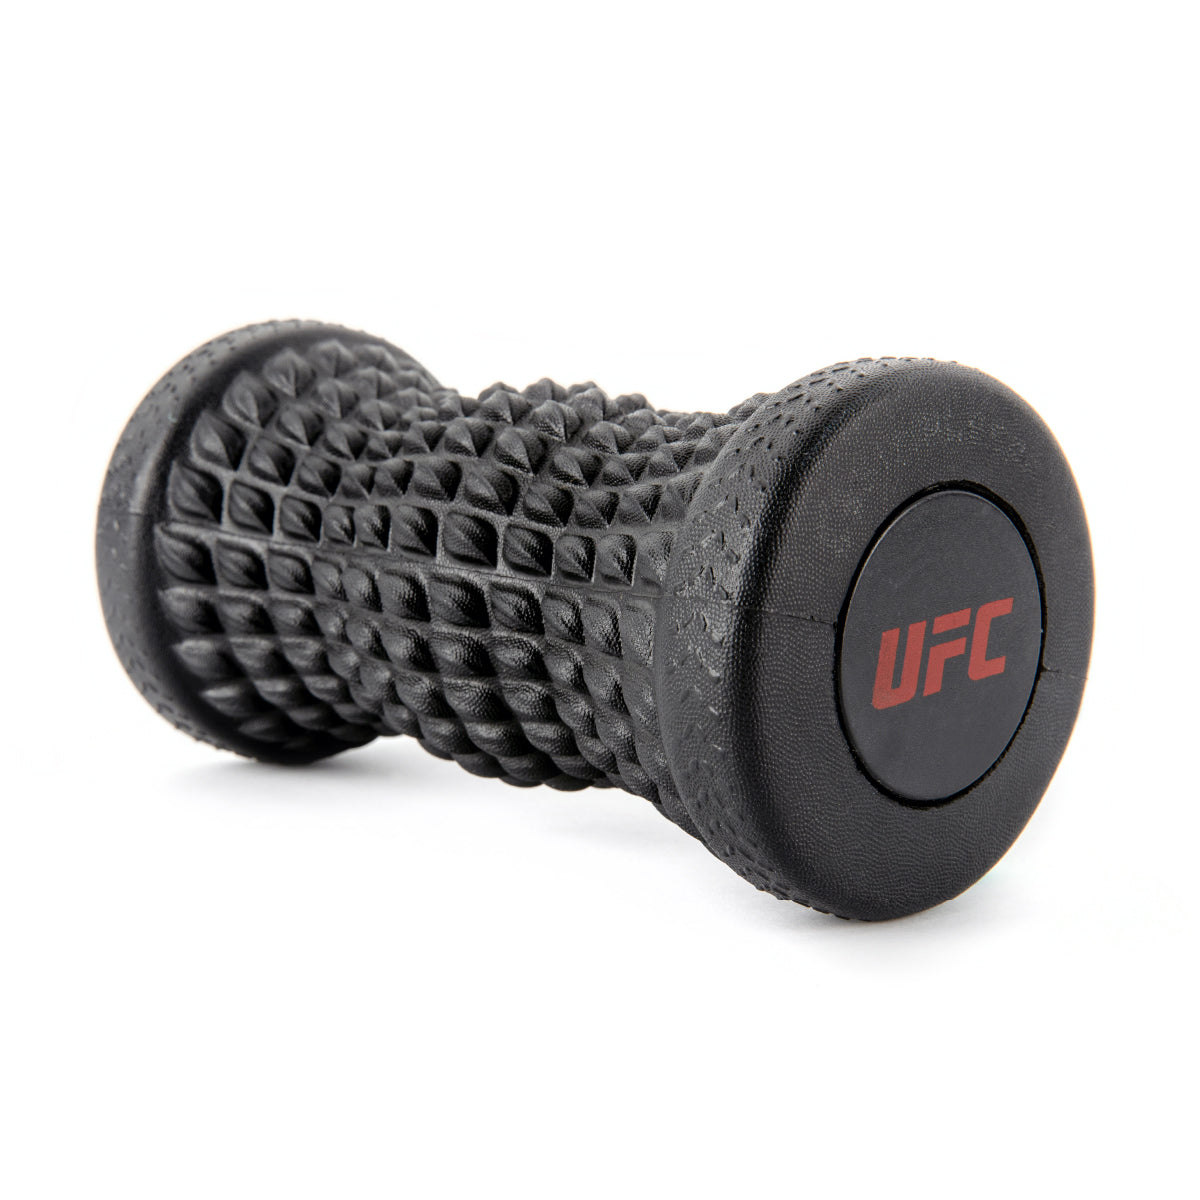 UFC Foot Massage Roller